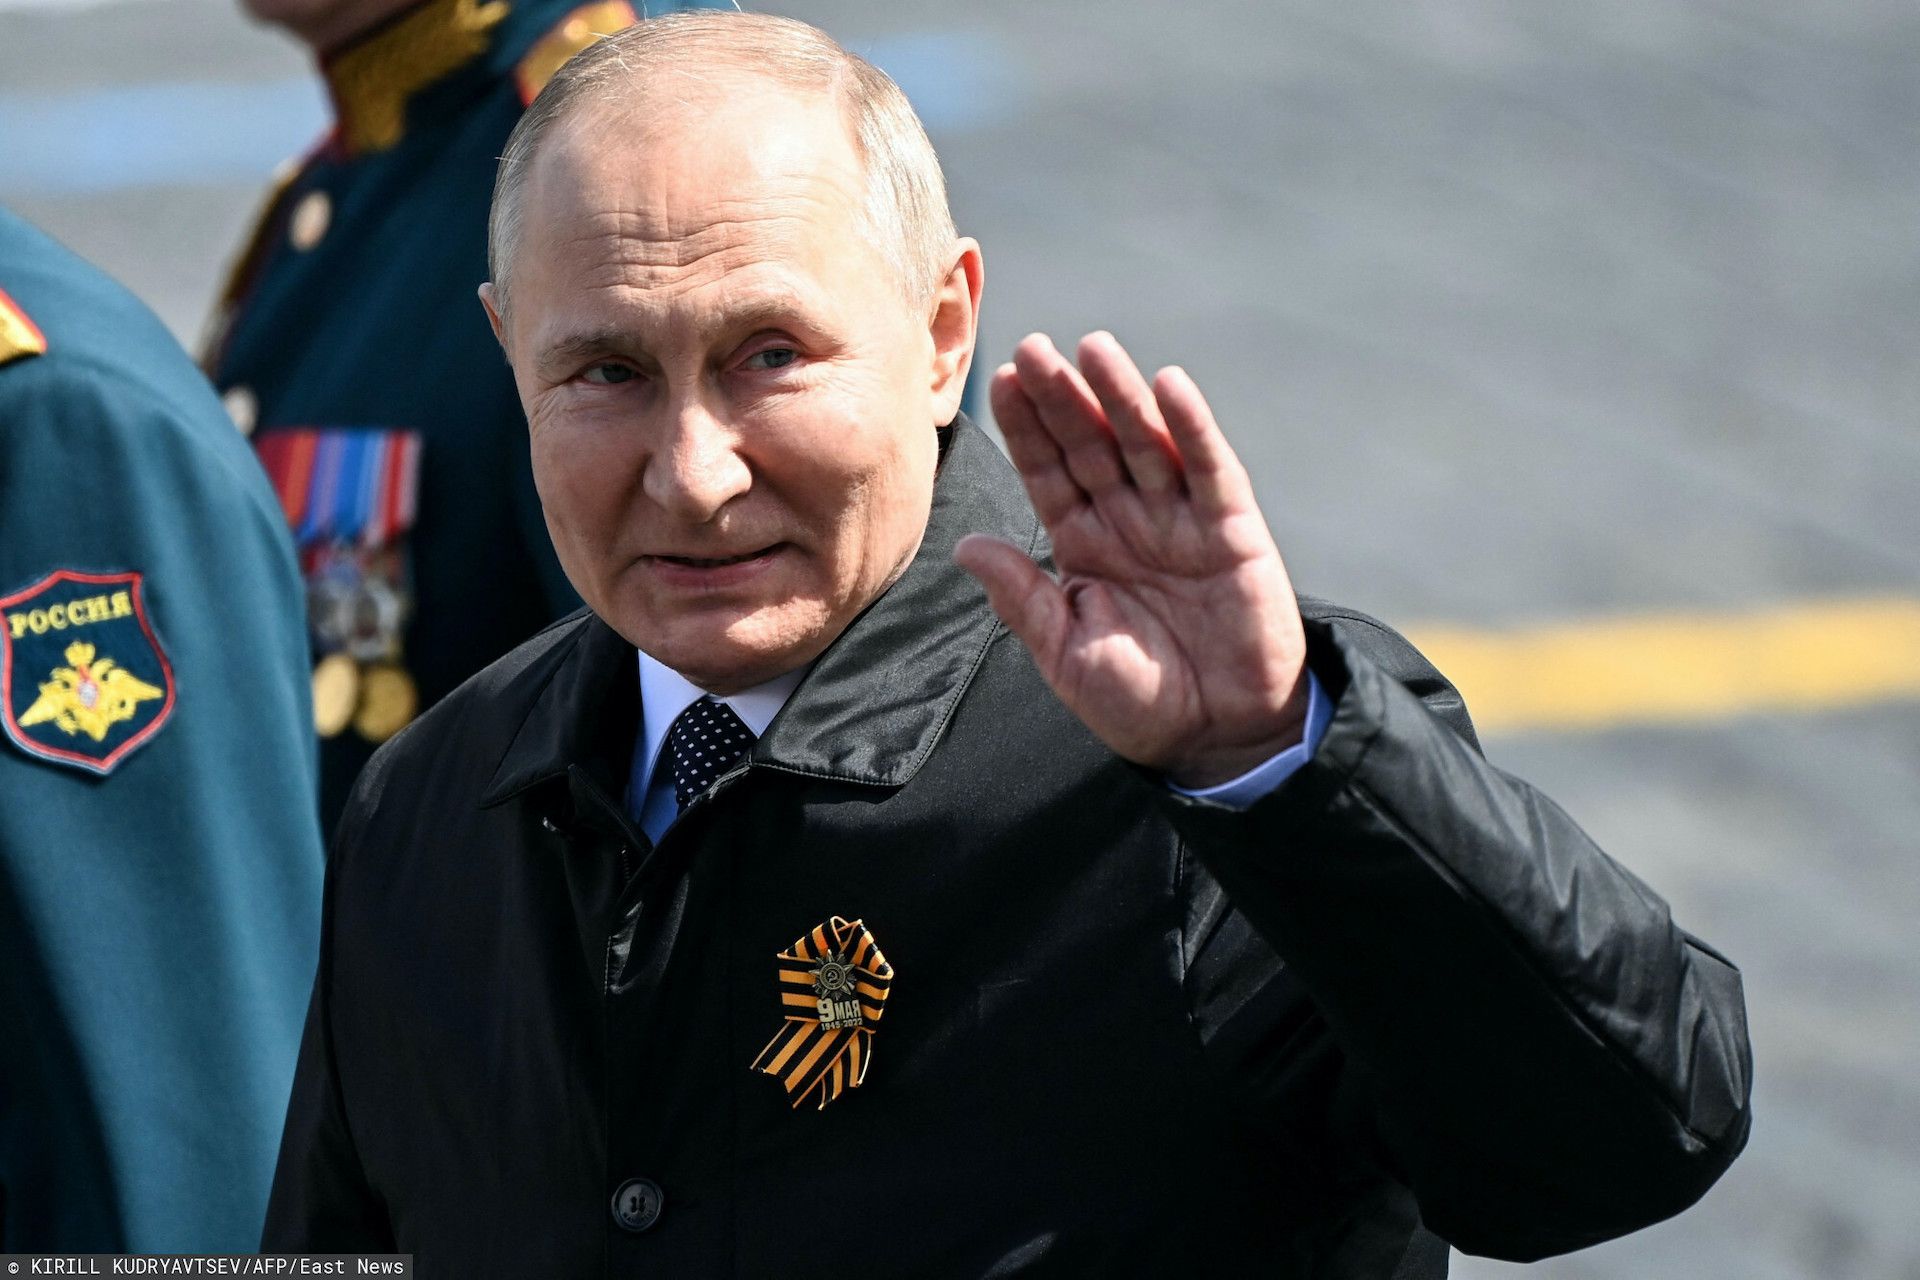 Władimir Putin skrytykowany przez brytyjskiego ministra obrony, został przyrównany do nazistów